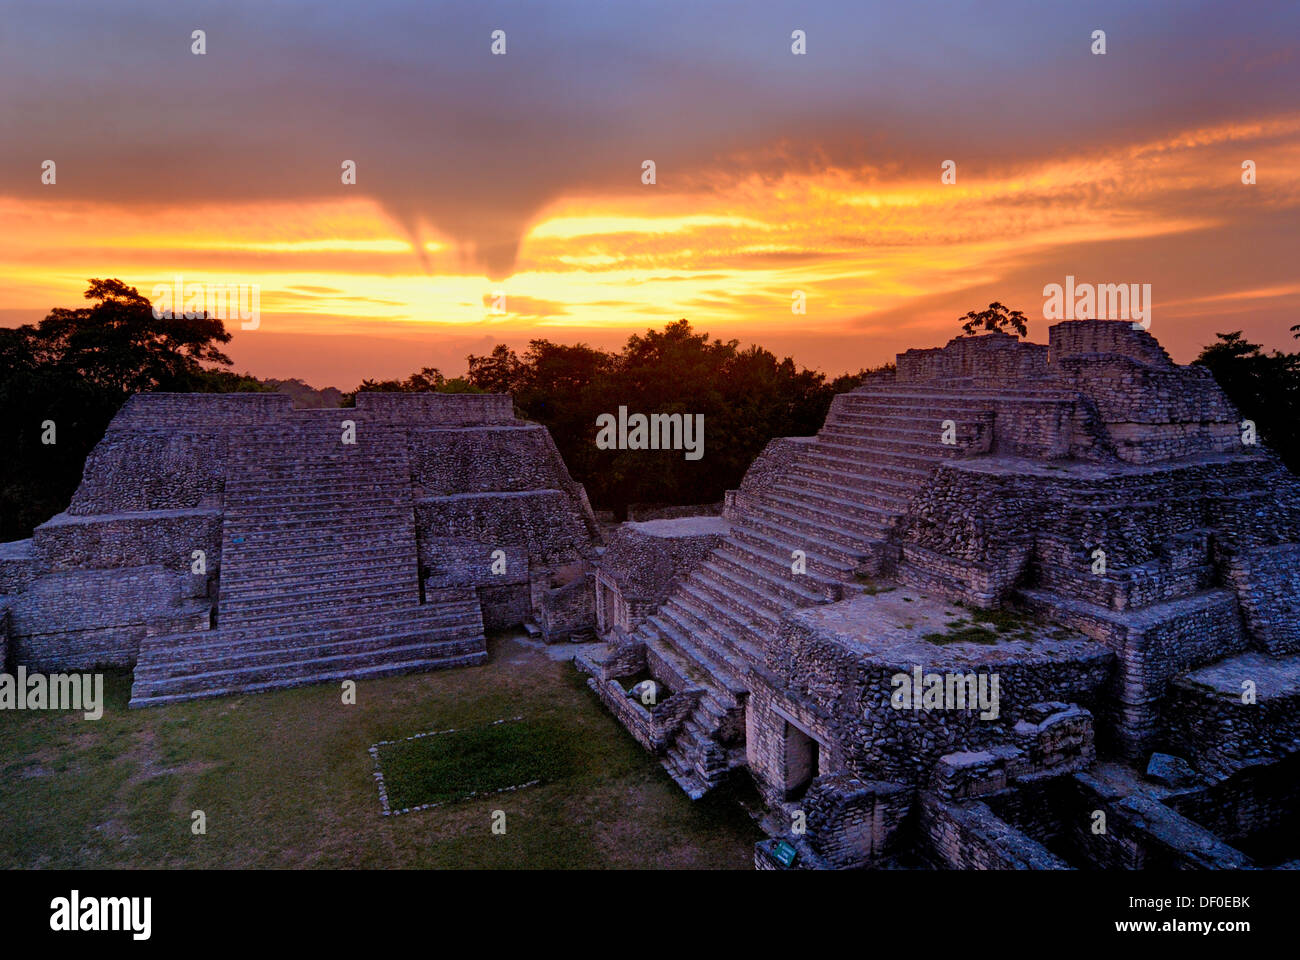 Les Temples Mayas de Caracol, pyramide, calendrier 2012, coucher de soleil, Belize, Amérique Centrale Banque D'Images